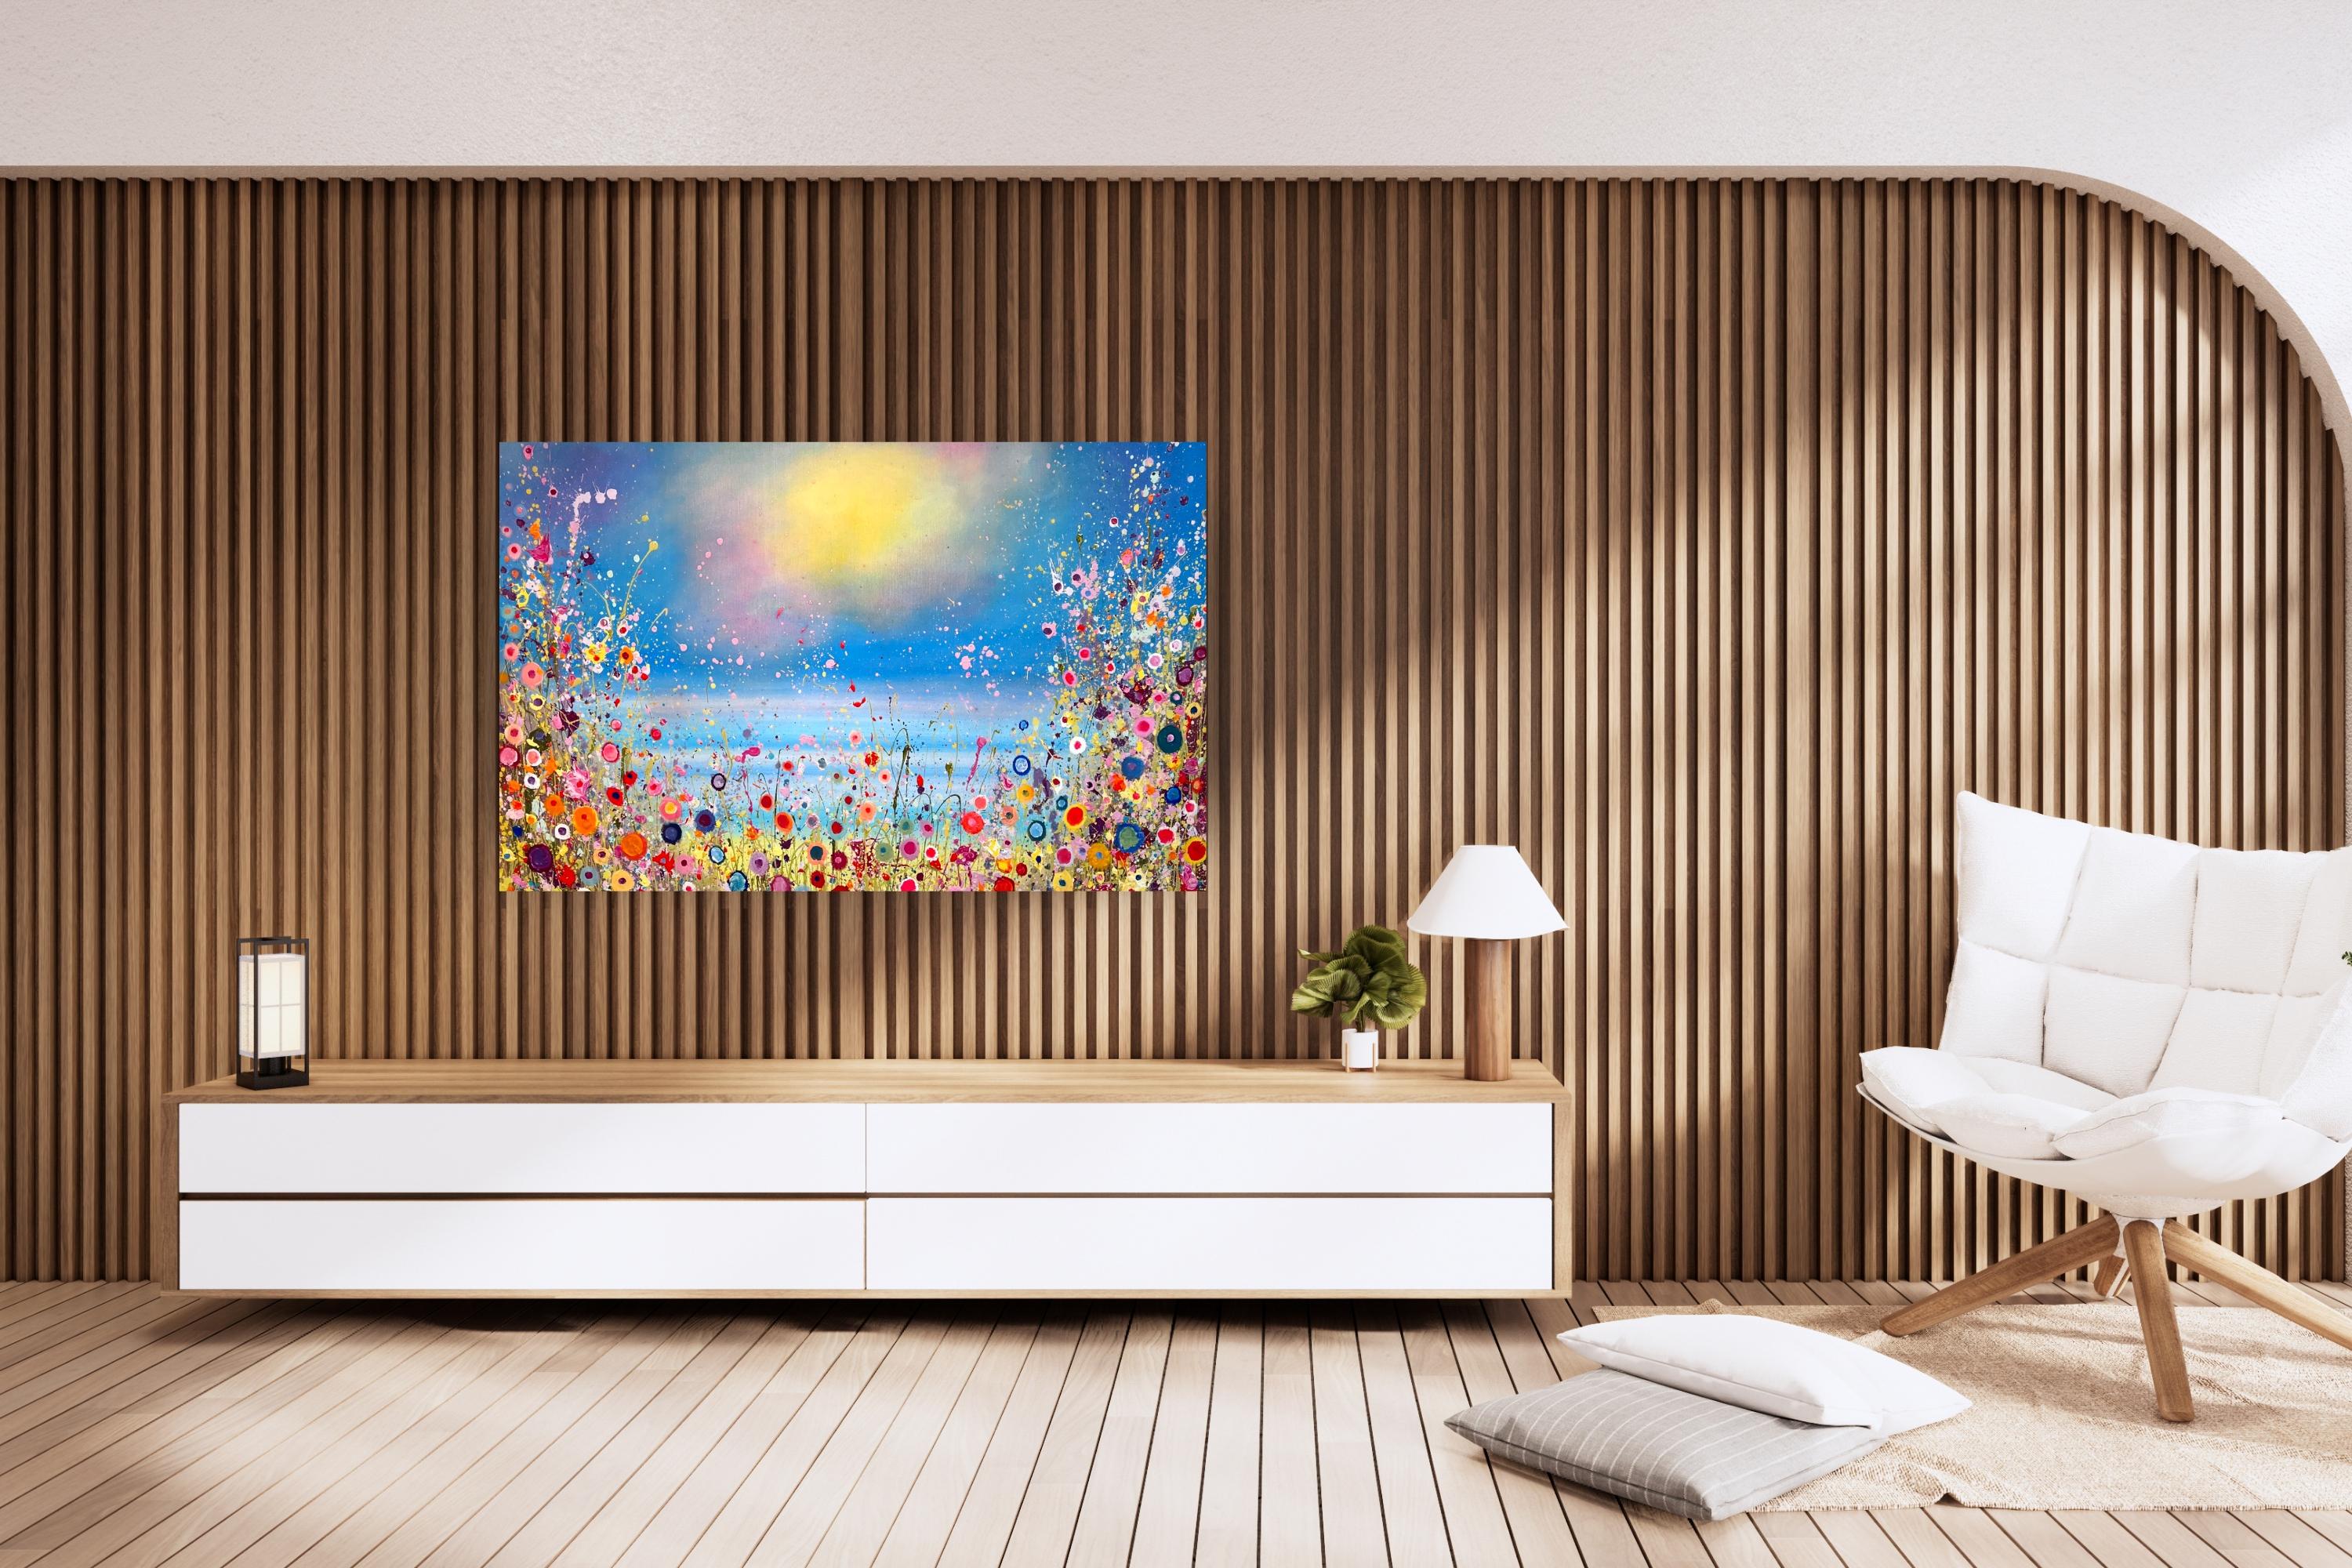 Les sirènes chantent Sweet Love Songs - original floral moderne, peinture à l'huile - Gris Abstract Painting par Yvonne Coomber